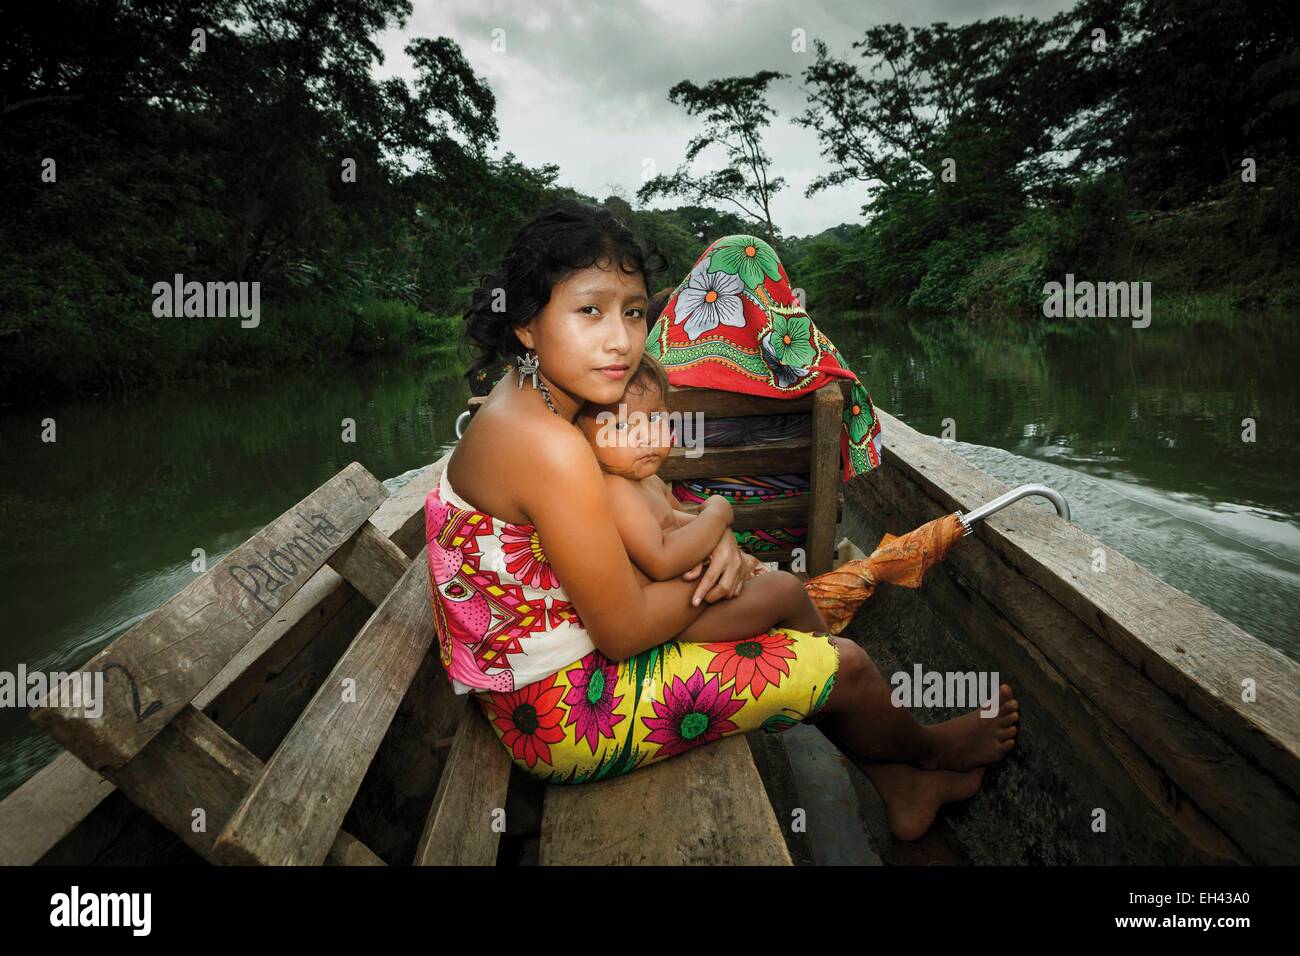 Panama, provincia di Darien, Parco Nazionale del Darién, classificato come patrimonio mondiale dall UNESCO, Embera comunità indigena, ritratto di un indigeno Embera donna con il suo bambino in una barca Foto Stock